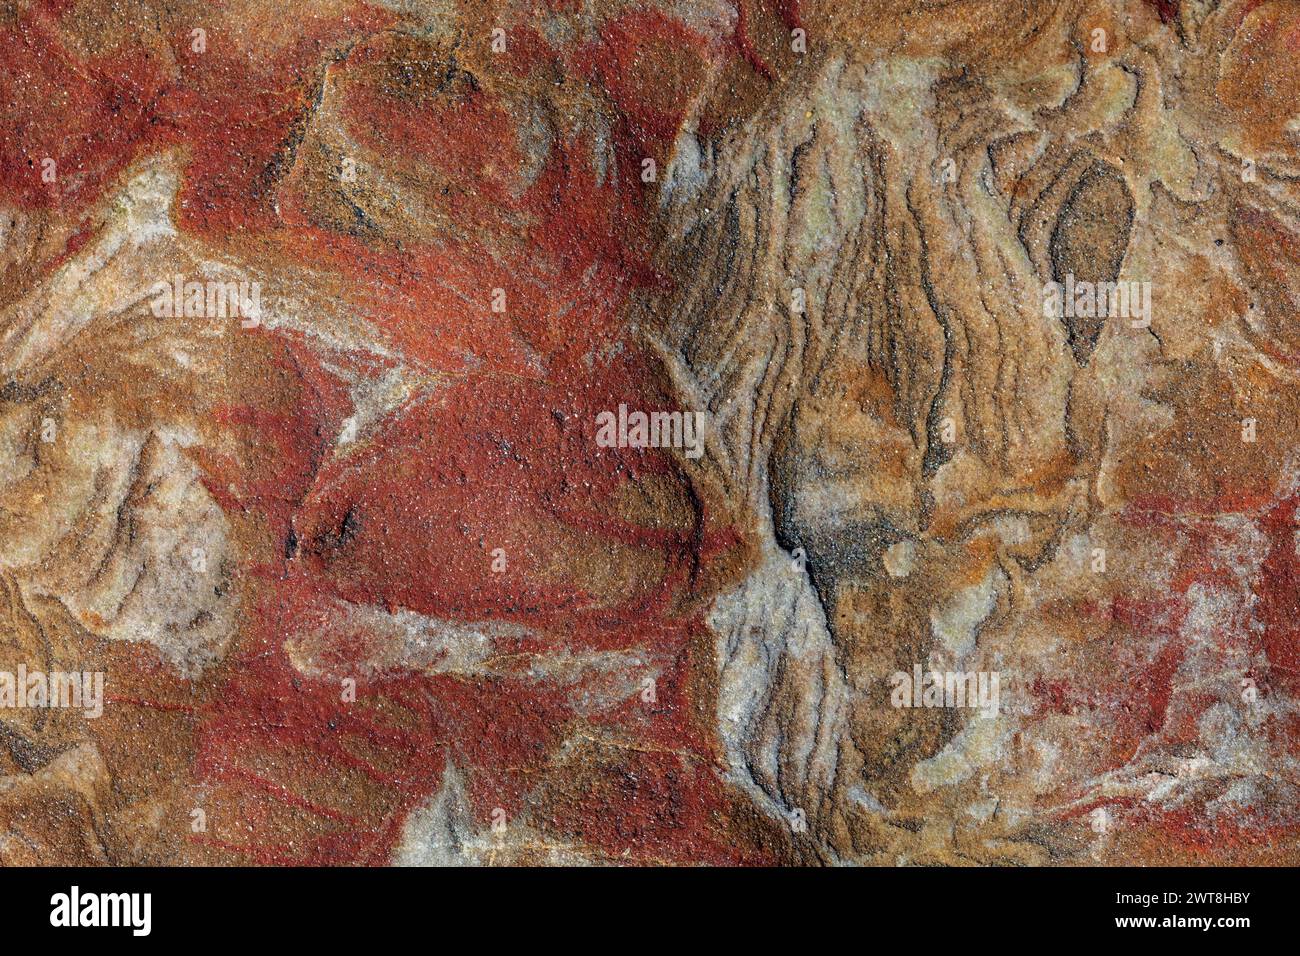 Belle photographie d'art en haute résolution de roche rouge altérée et de couleur sable de Fife en Écosse, peut être utilisée comme arrière-plan ou image Banque D'Images